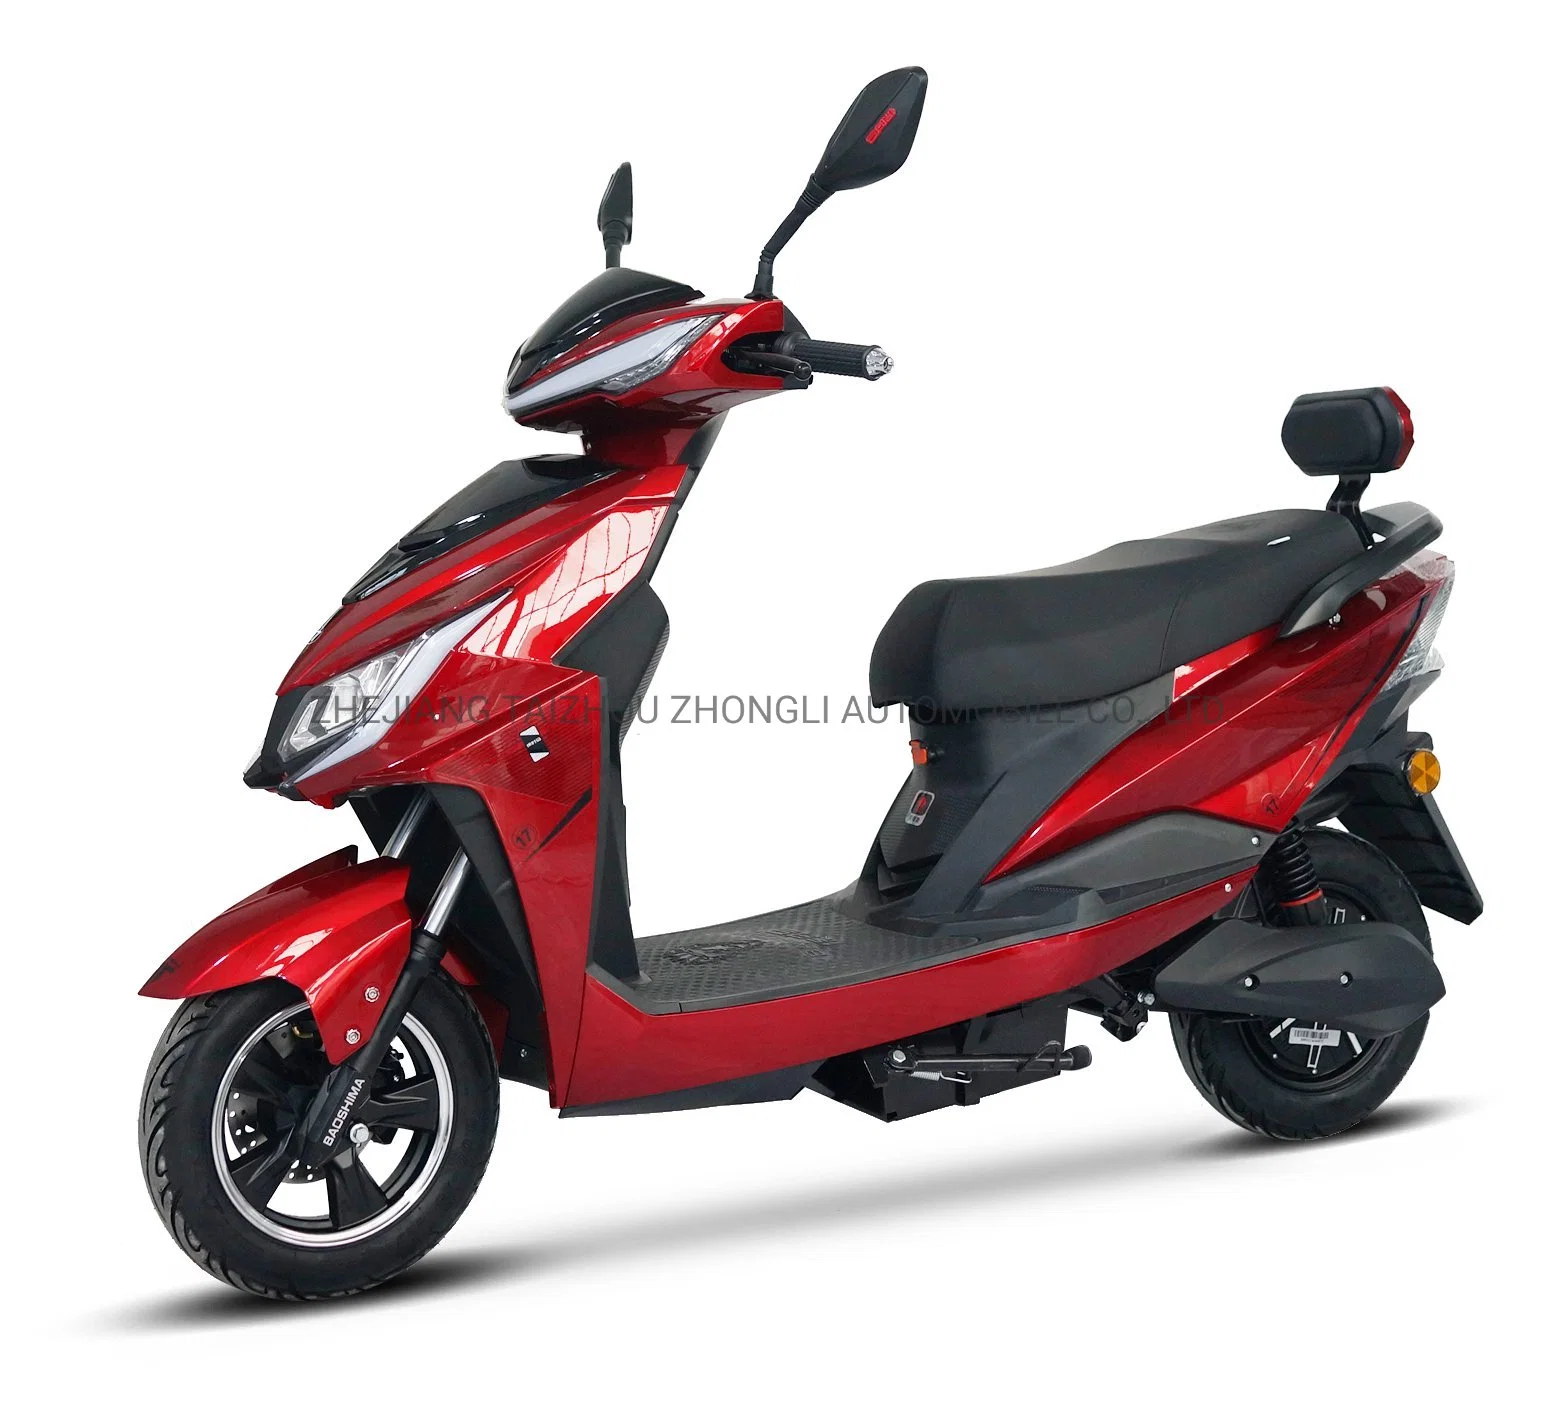 Scooter de Mobilidade Elétrica de Longa Distância Poderoso Venda Quente Motocicleta Elétrica 1200W Zl-3